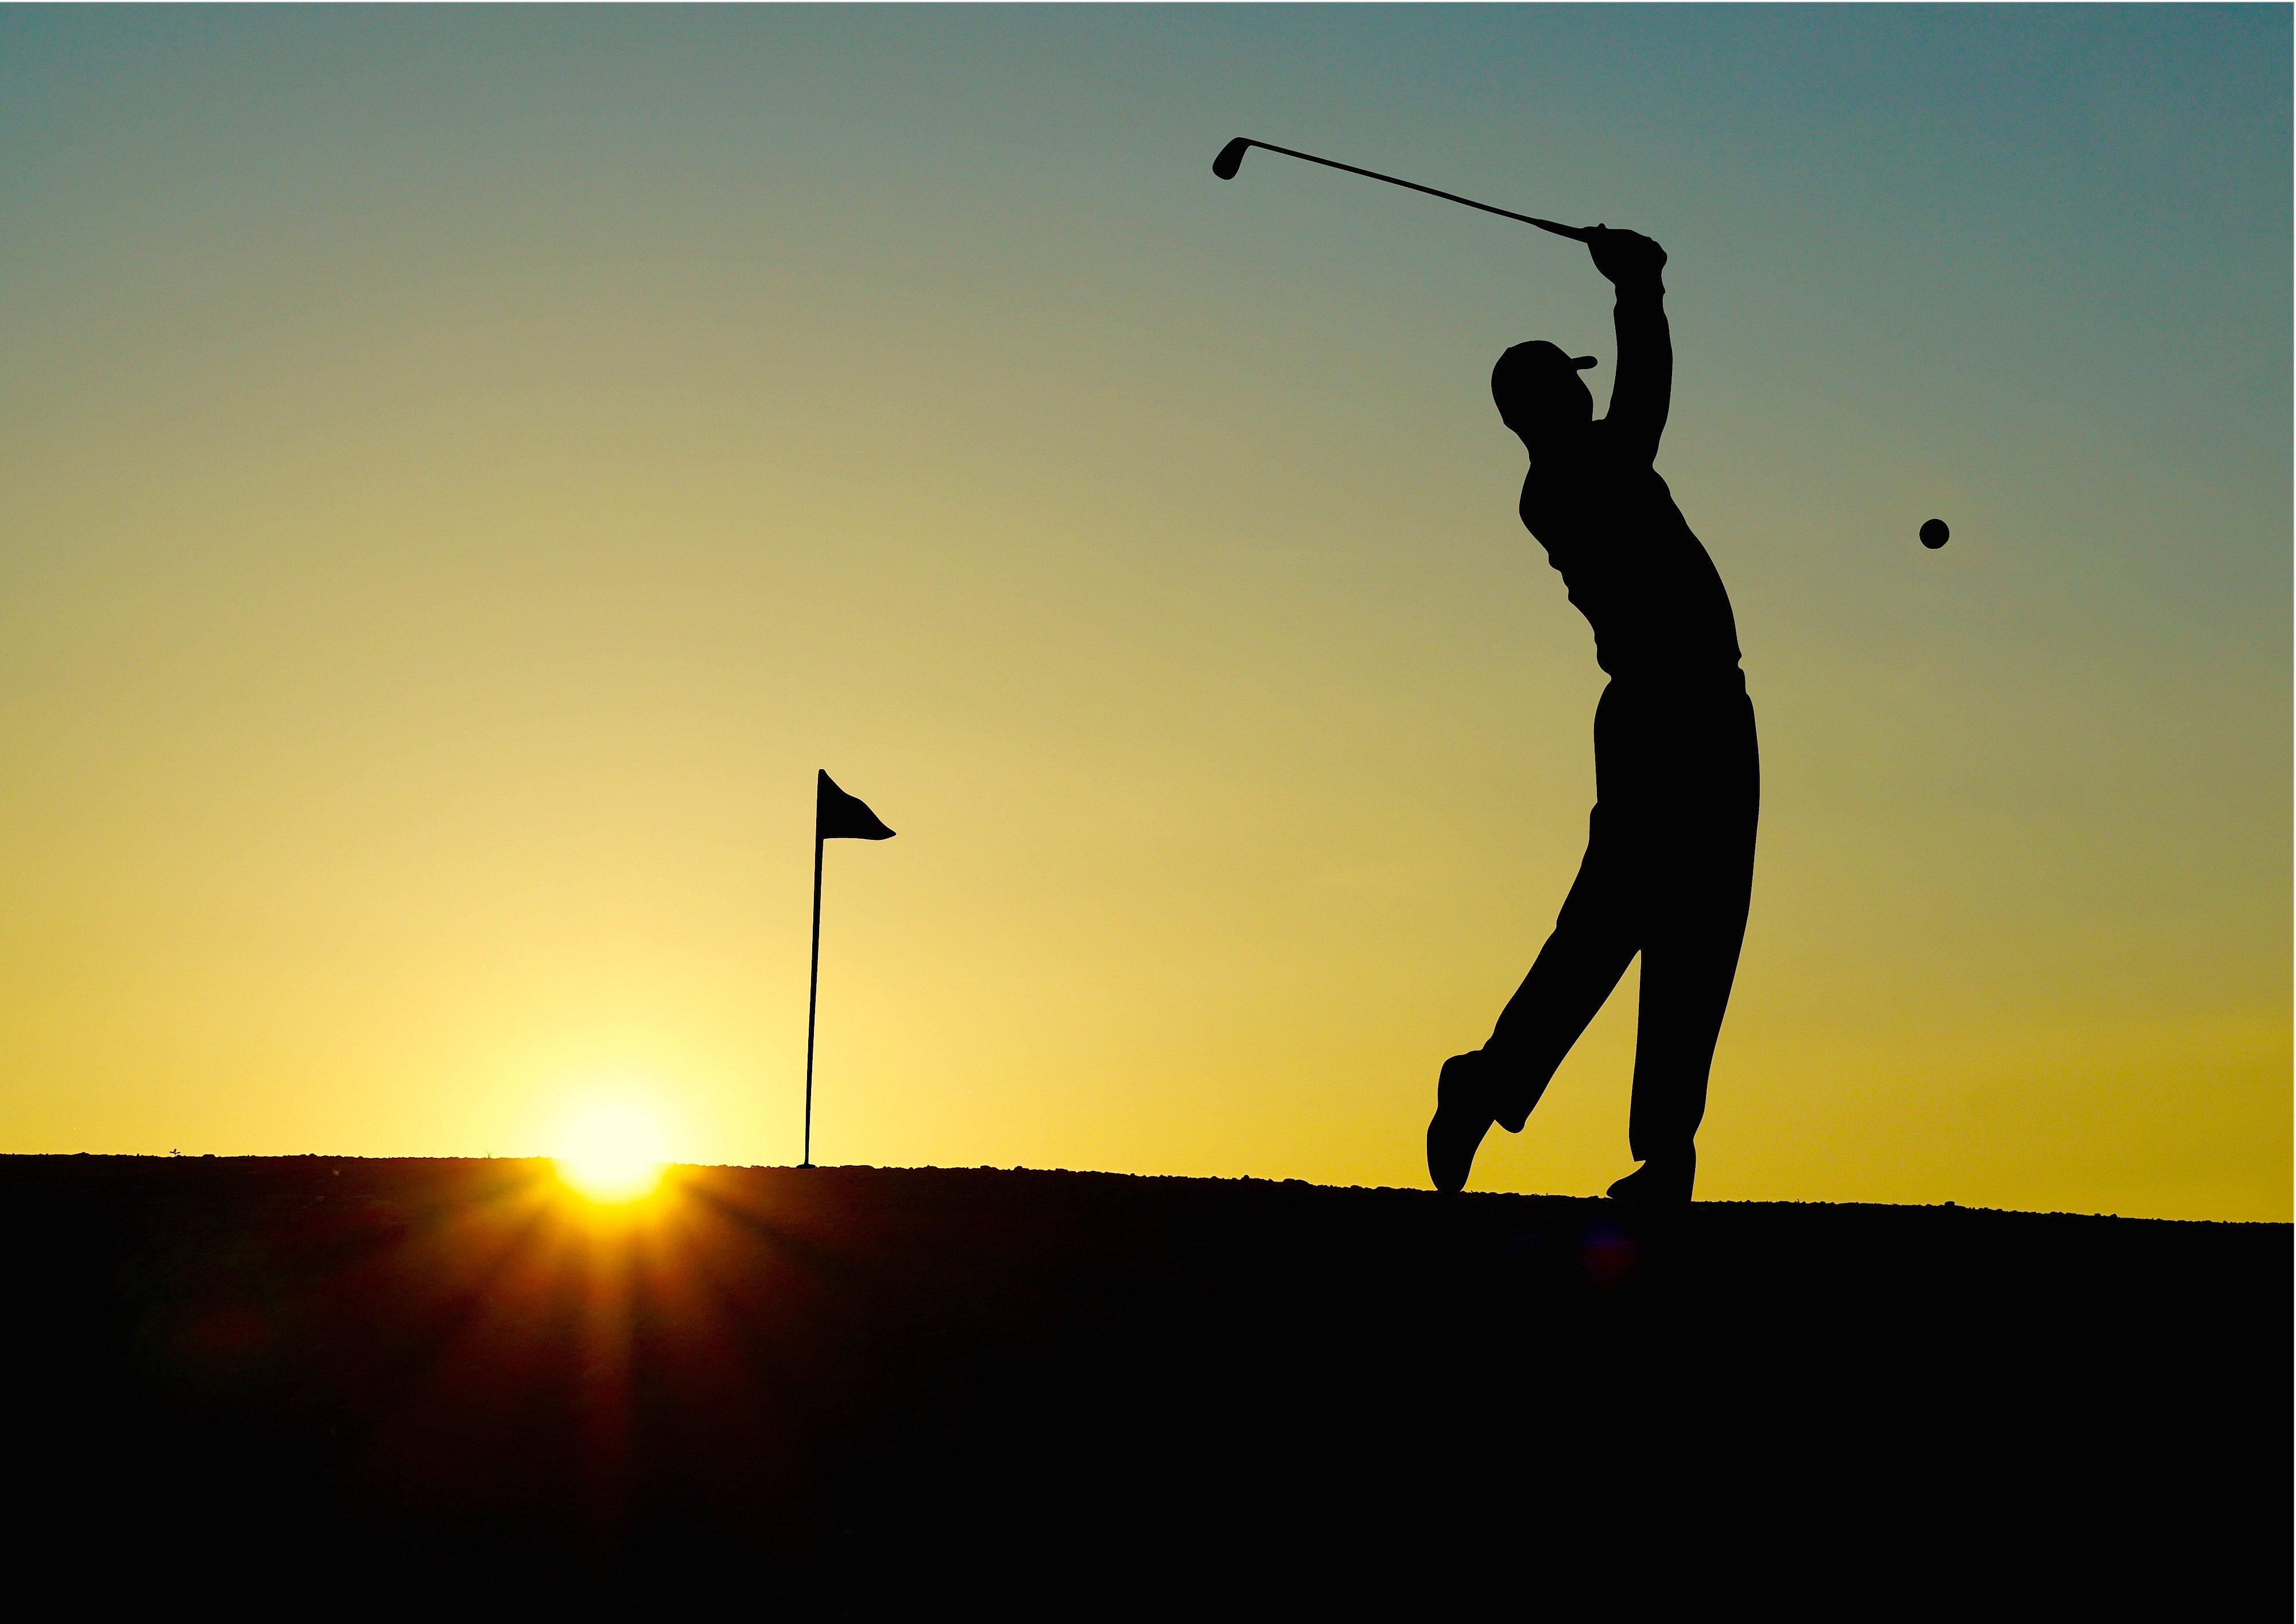 Man Playing Golf at Sunset